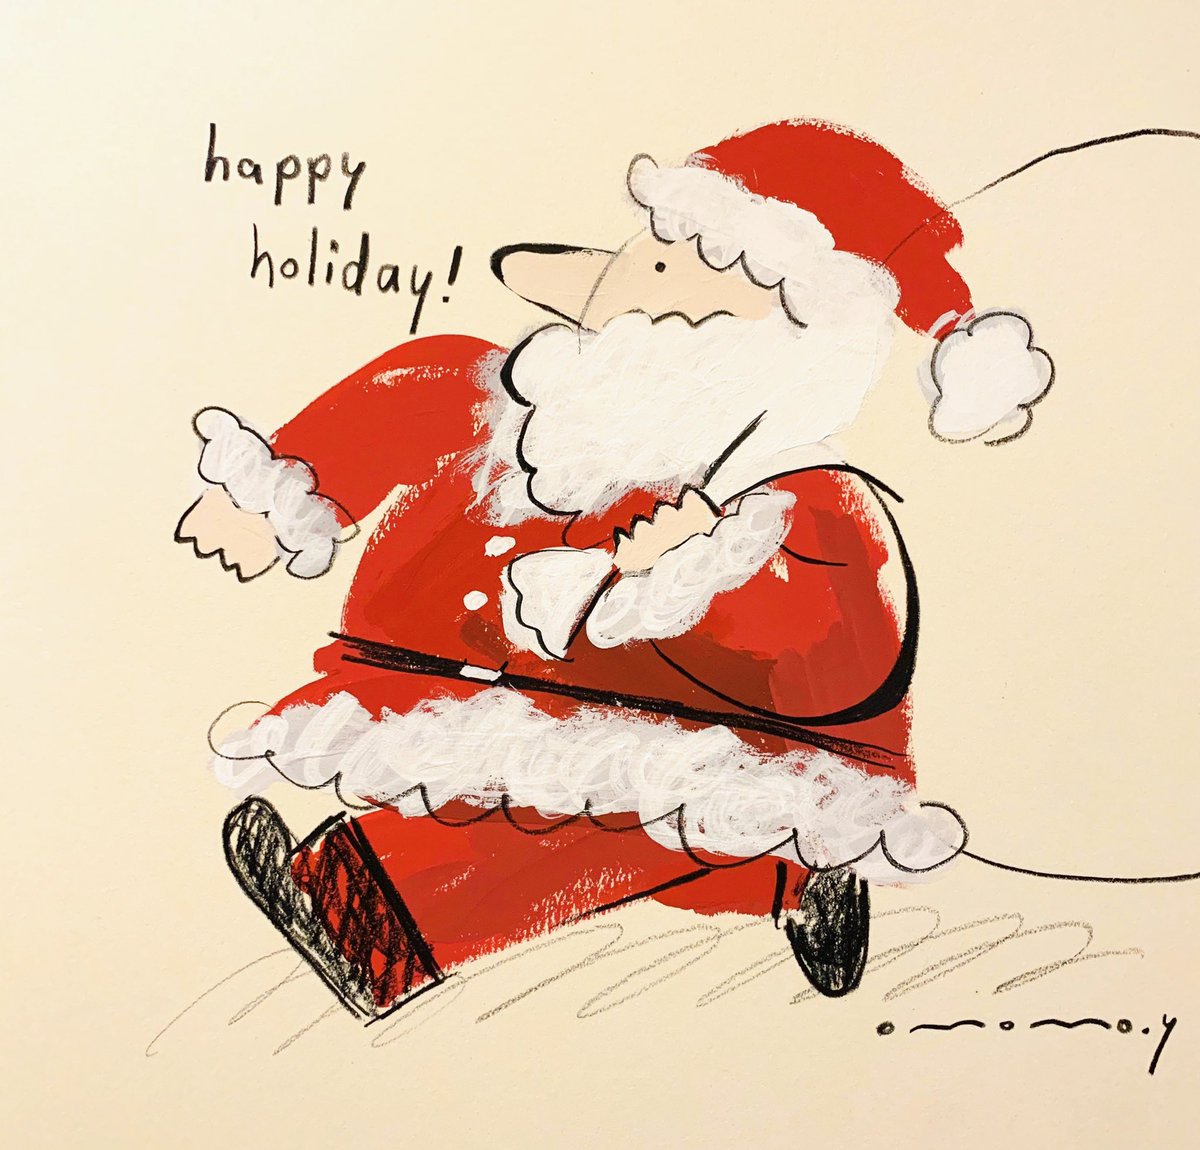 「ダッシュで描いた!良く描けた!メリークリスマス!? 」|大桃洋祐のイラスト